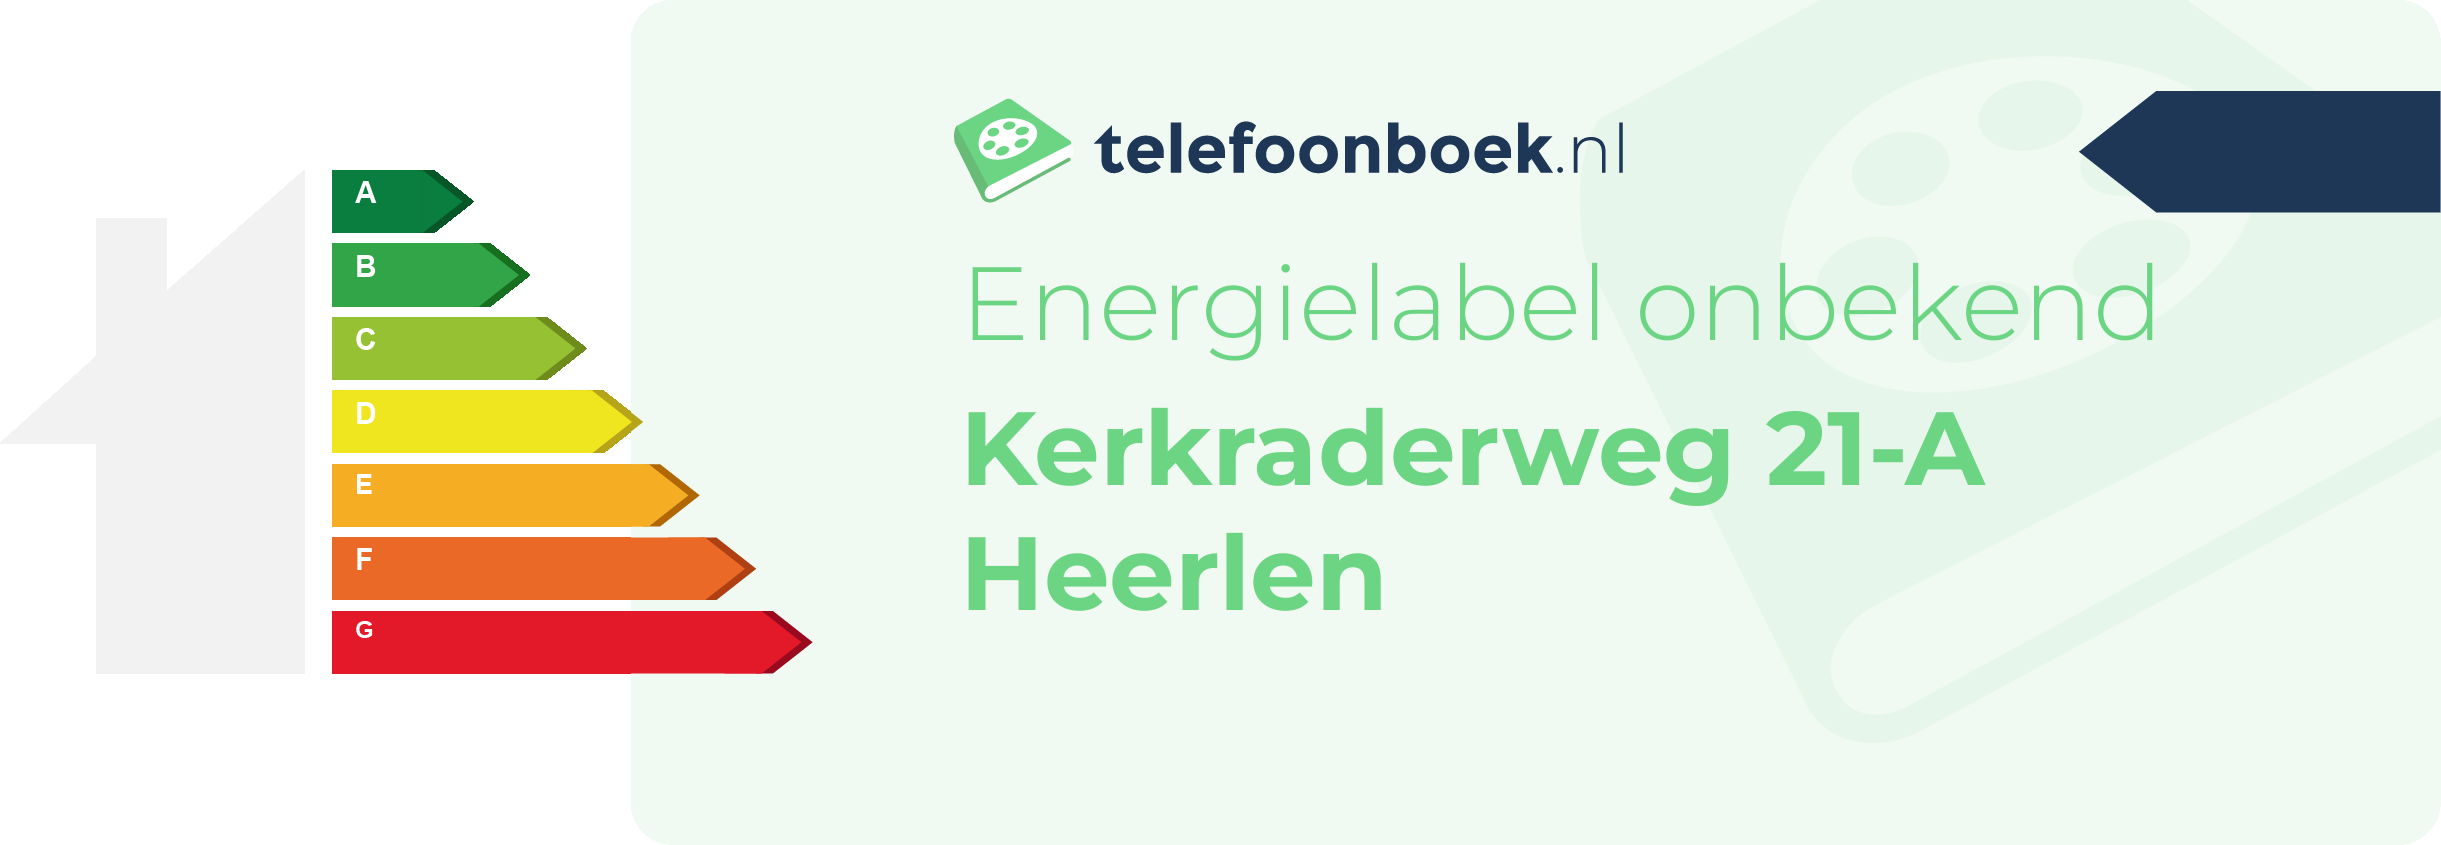 Energielabel Kerkraderweg 21-A Heerlen